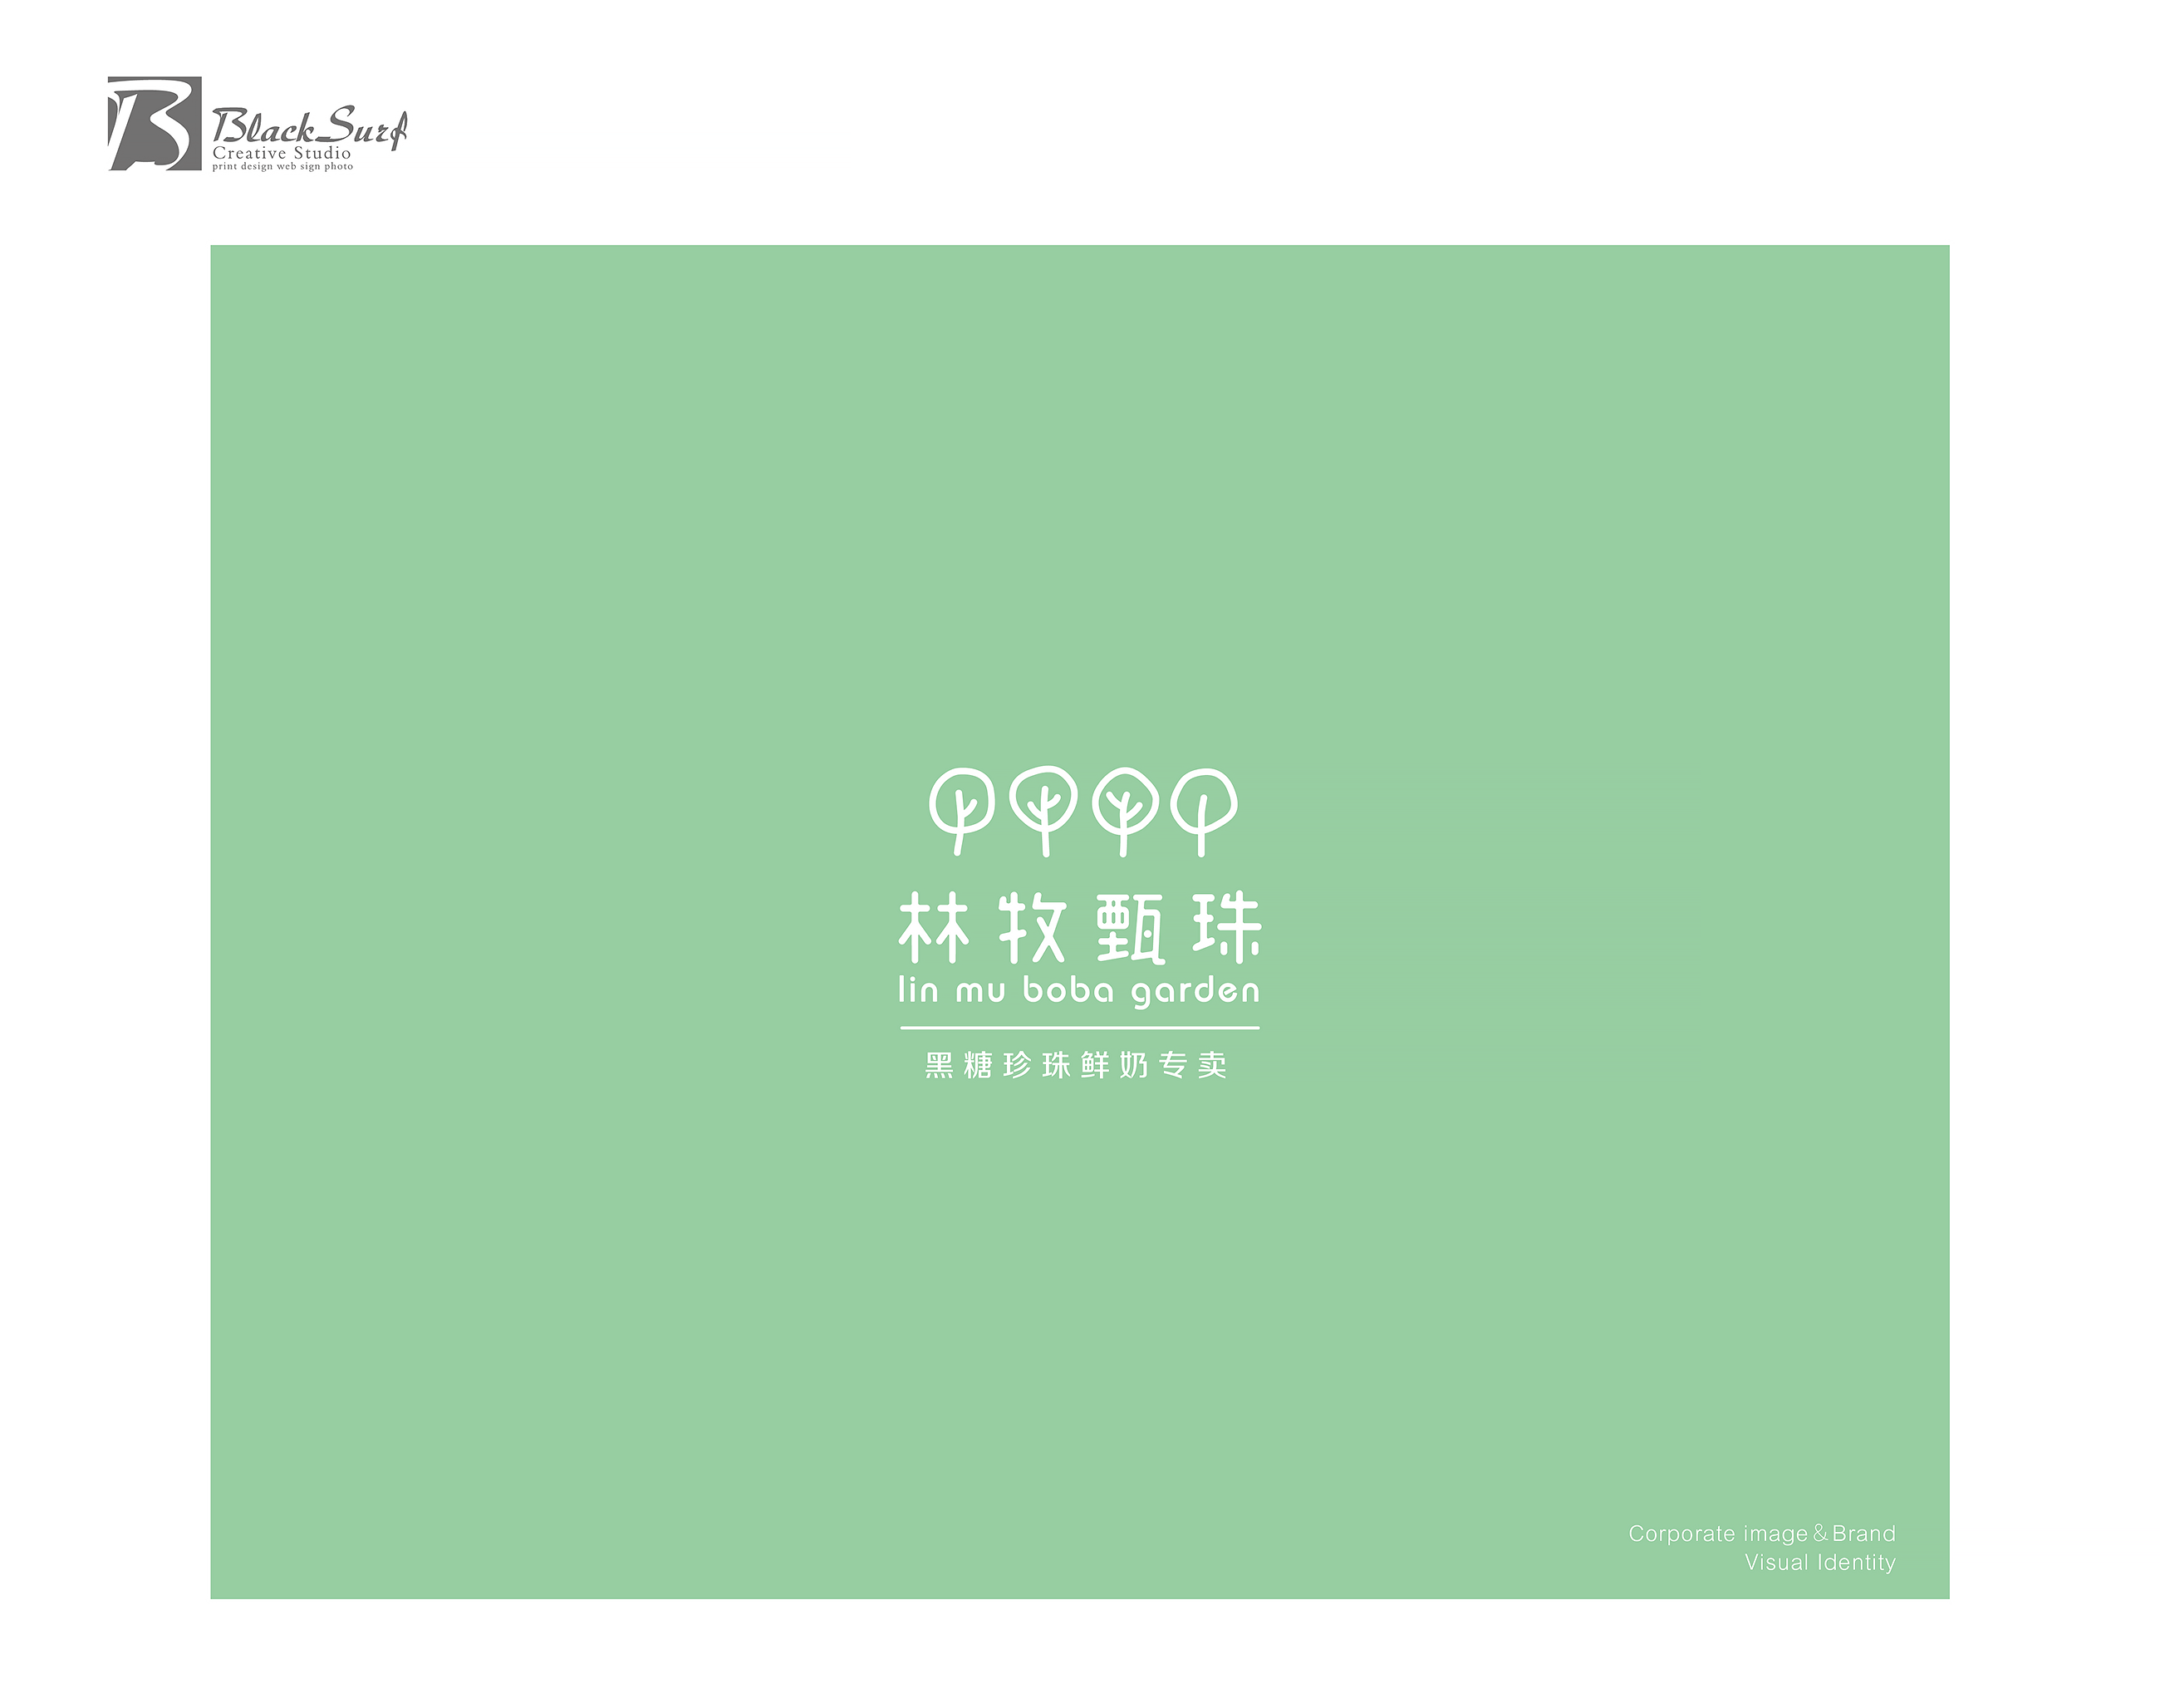  林牧甄珠Logo設計綠底-台中LOGO設計公司推薦